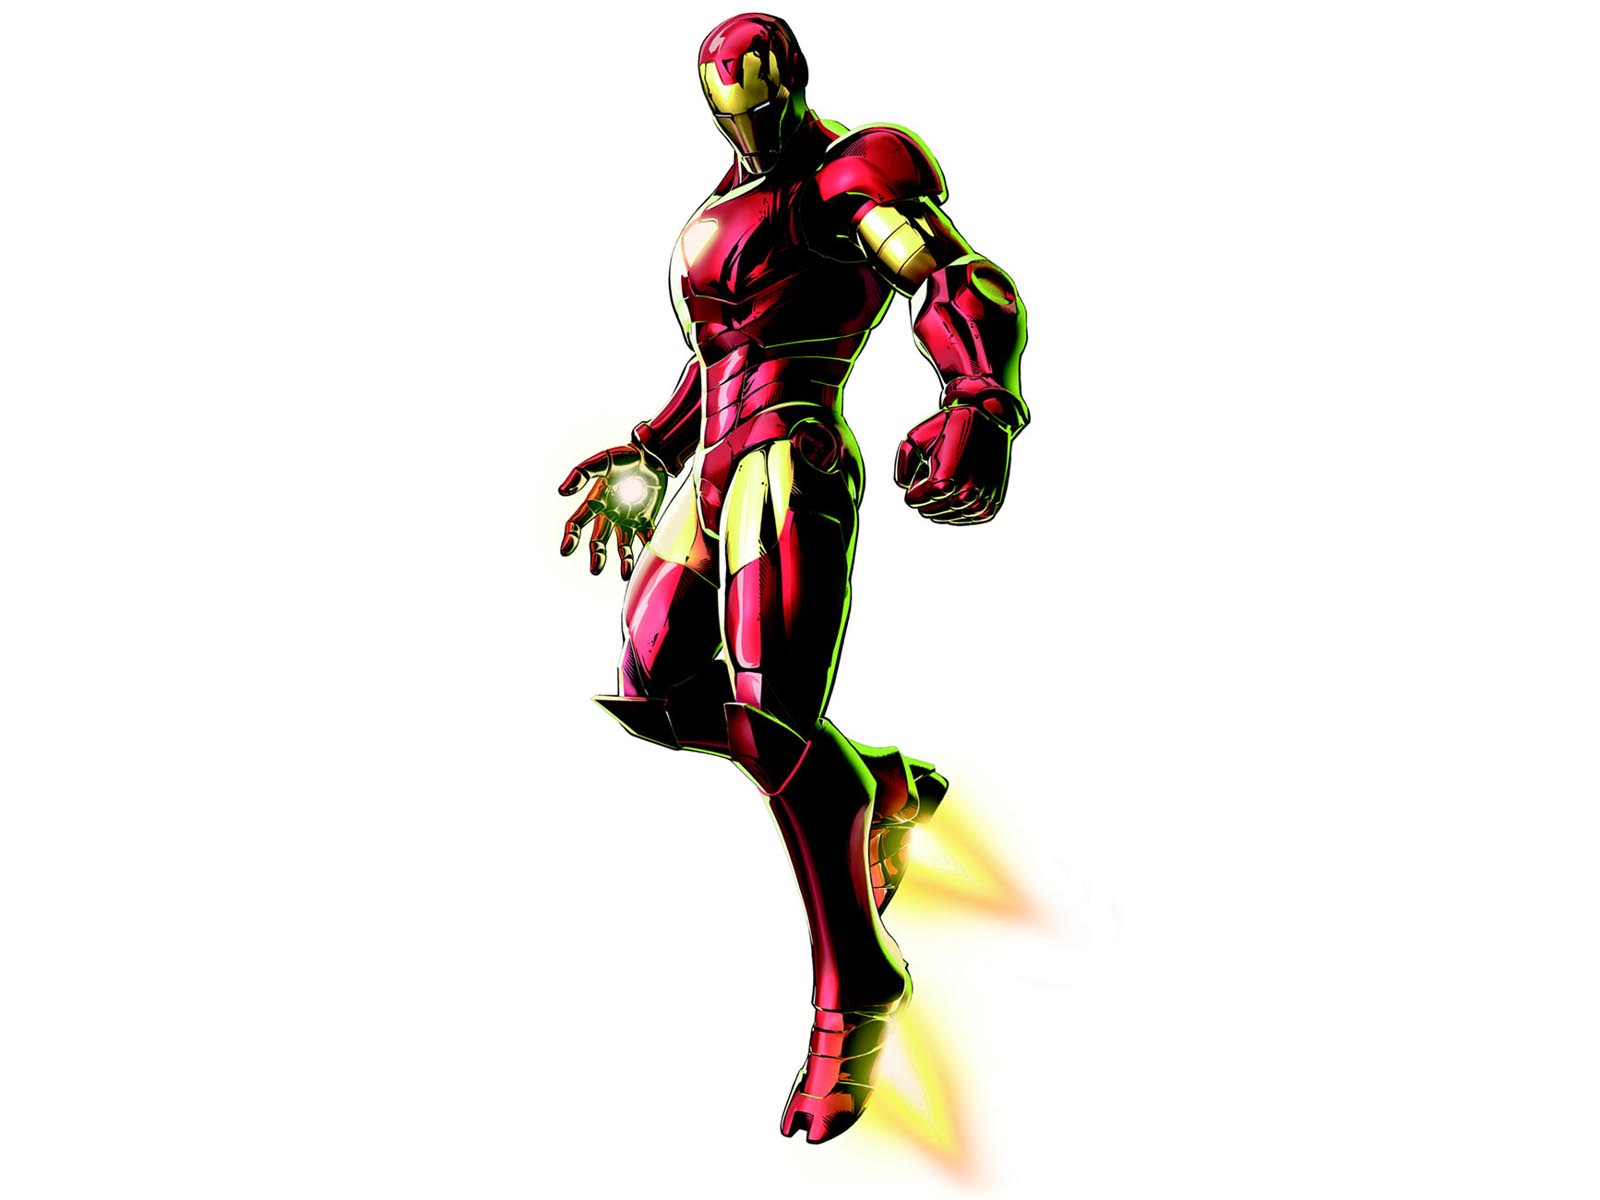 Marvel Vs Capcom 3 Iron Man , HD Wallpaper & Backgrounds